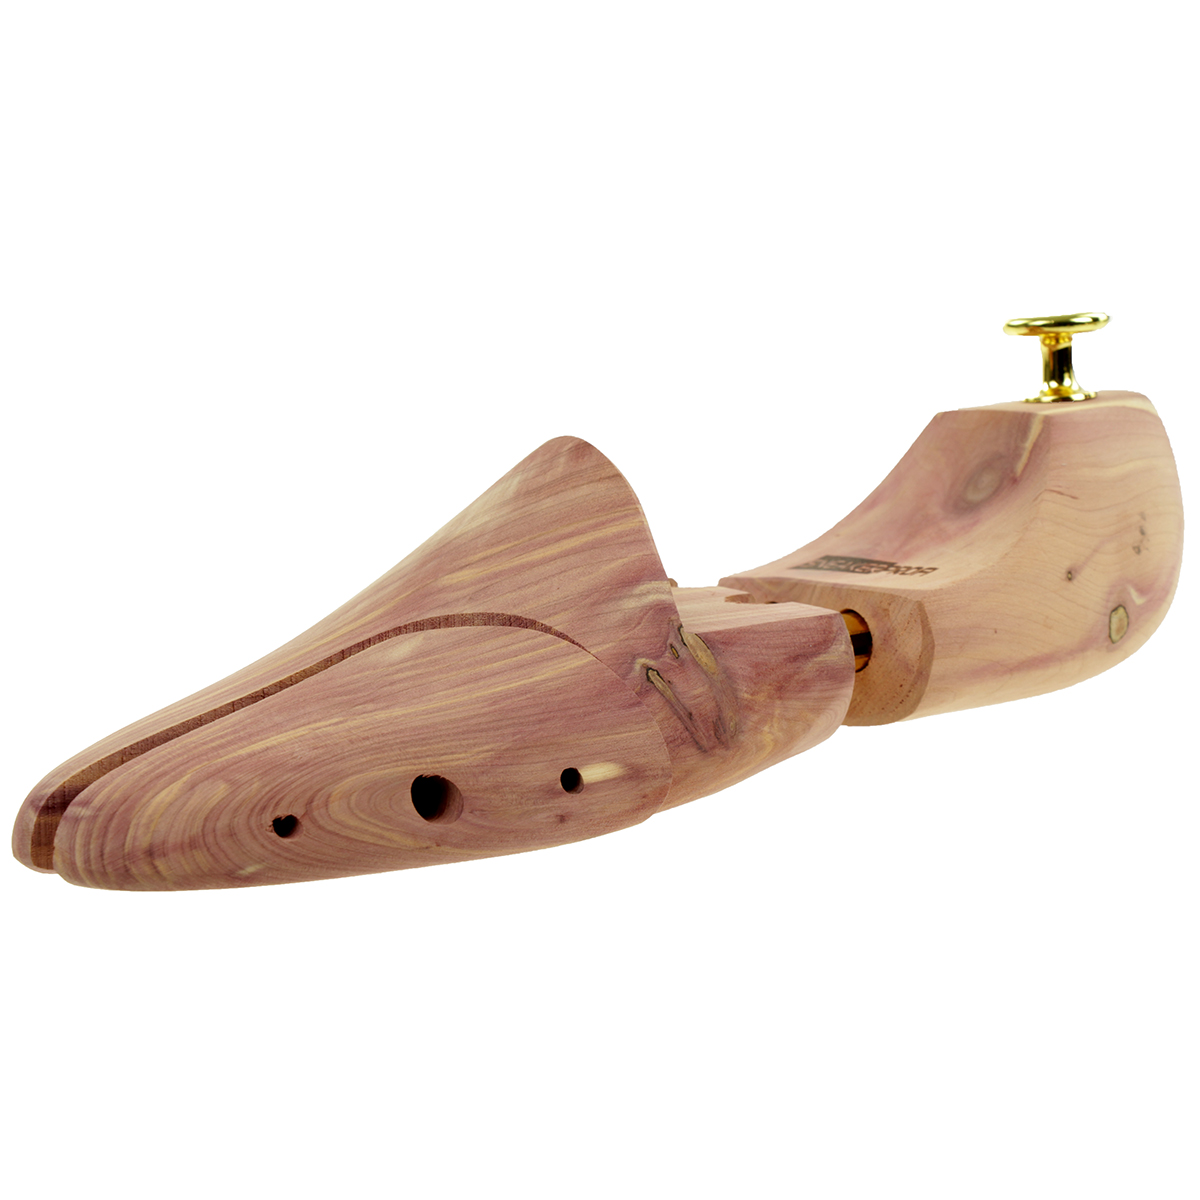 Schuhspanner aus Zedernholz Echtholz für Damen und Herren mit Doppelfeder Optimale Passform und Ventilation 2 Paar